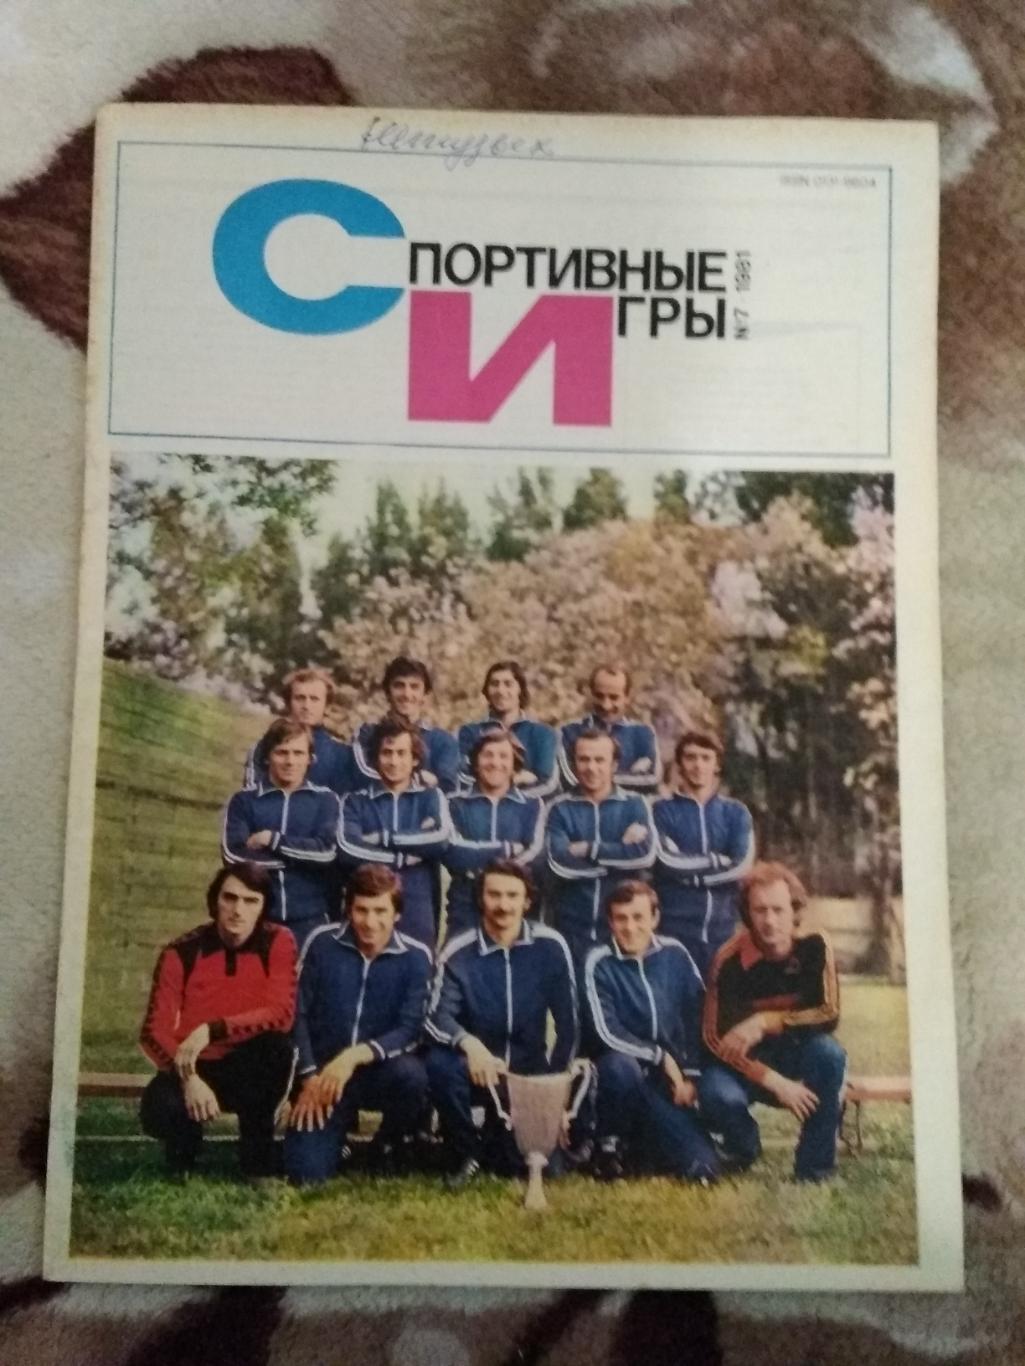 Журнал.Спортивные игры № 7 1981 г.